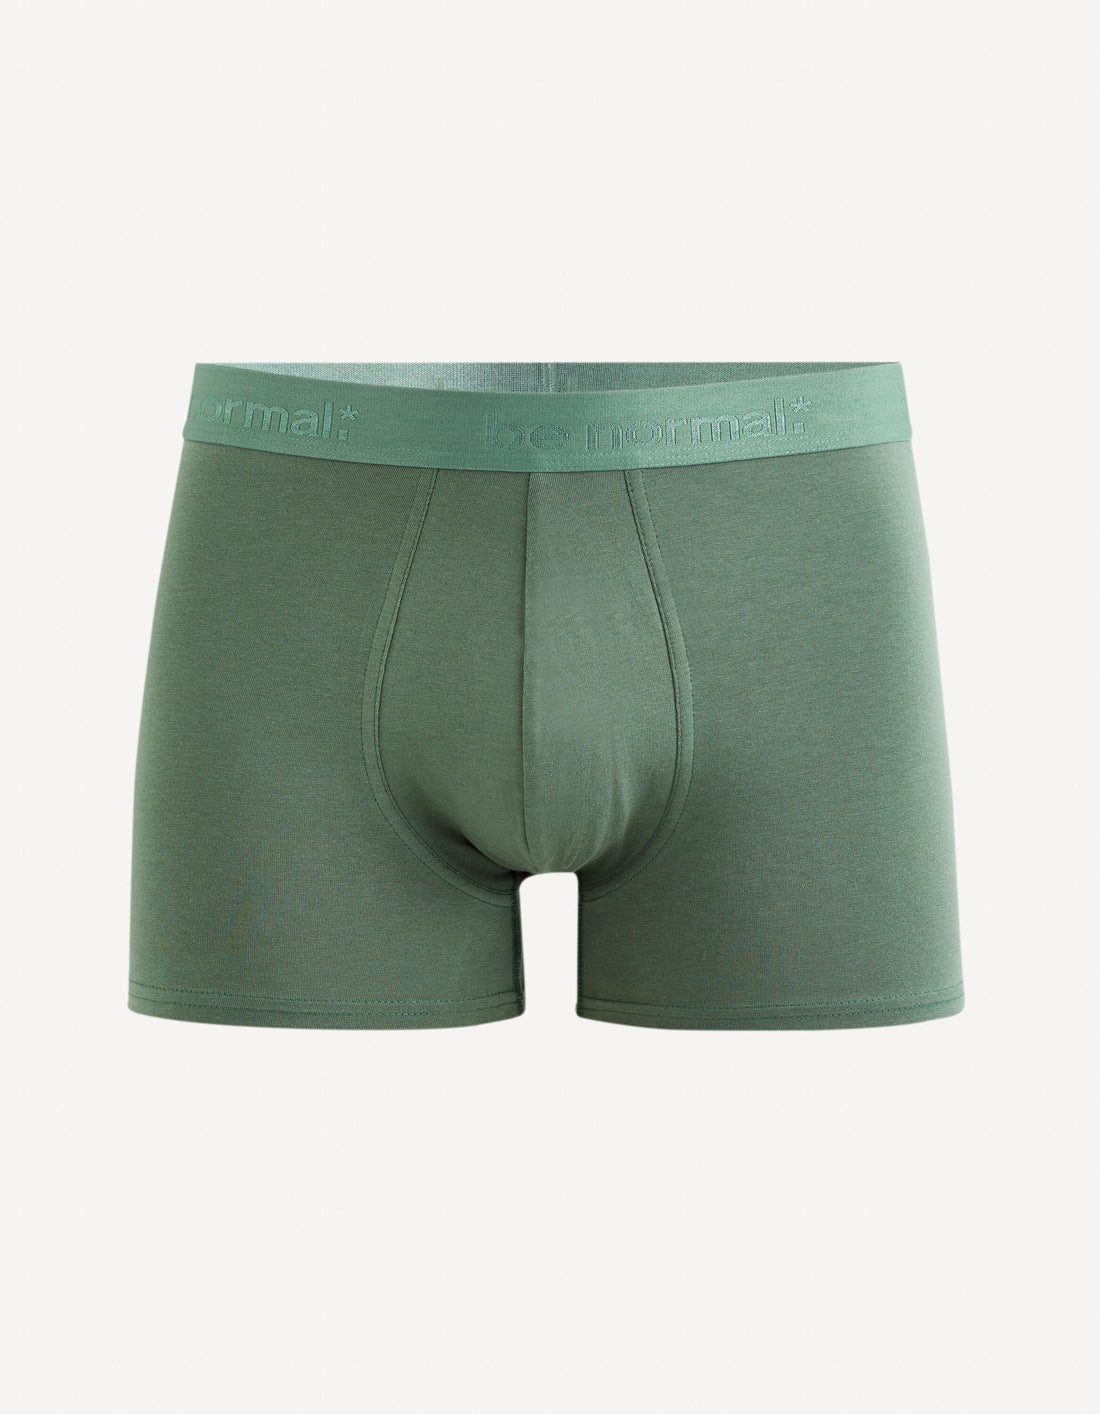 Plain Stretch Cotton Boxer Shorts_BINORMAL_VERT DE GRIS_01